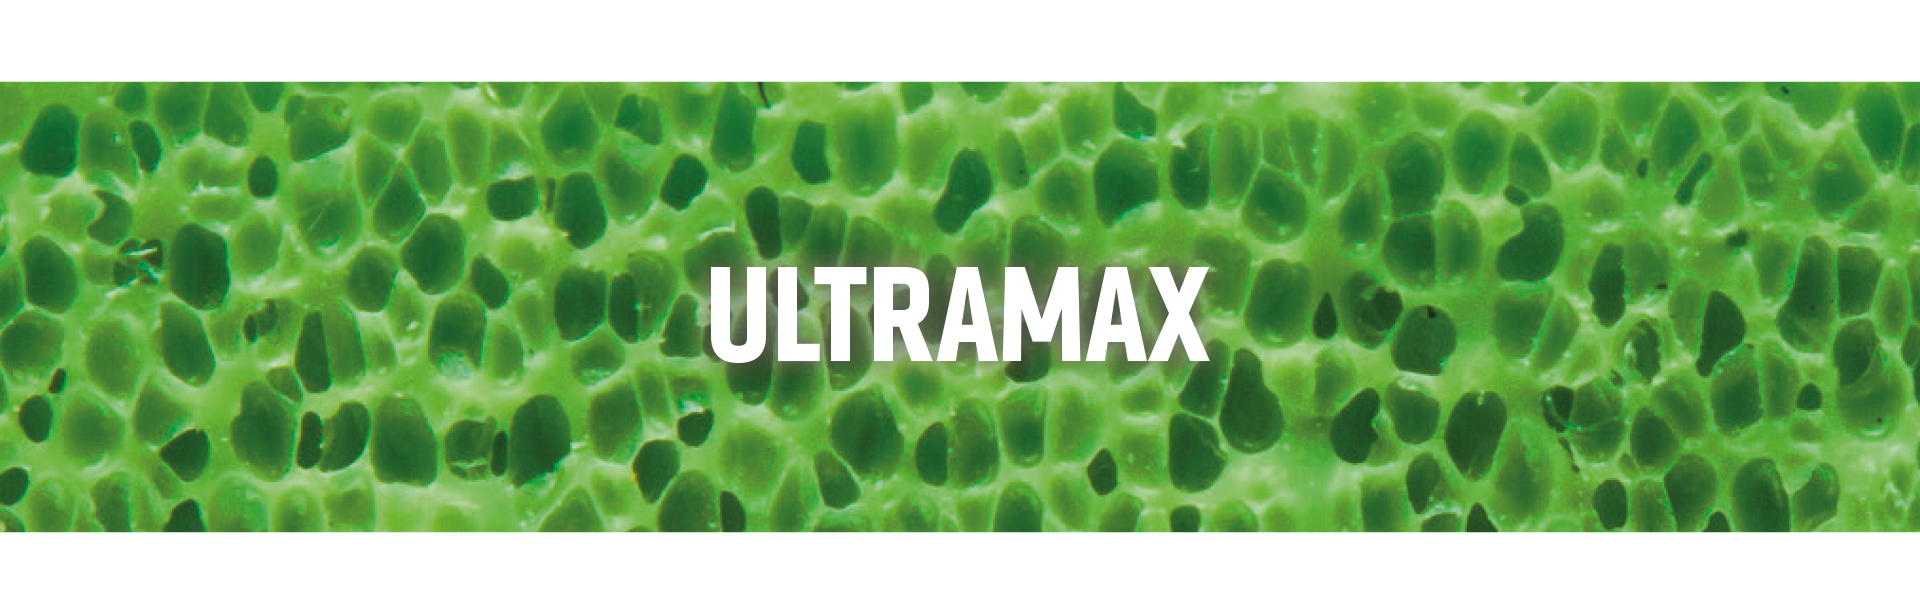 Ultramax-Sponge